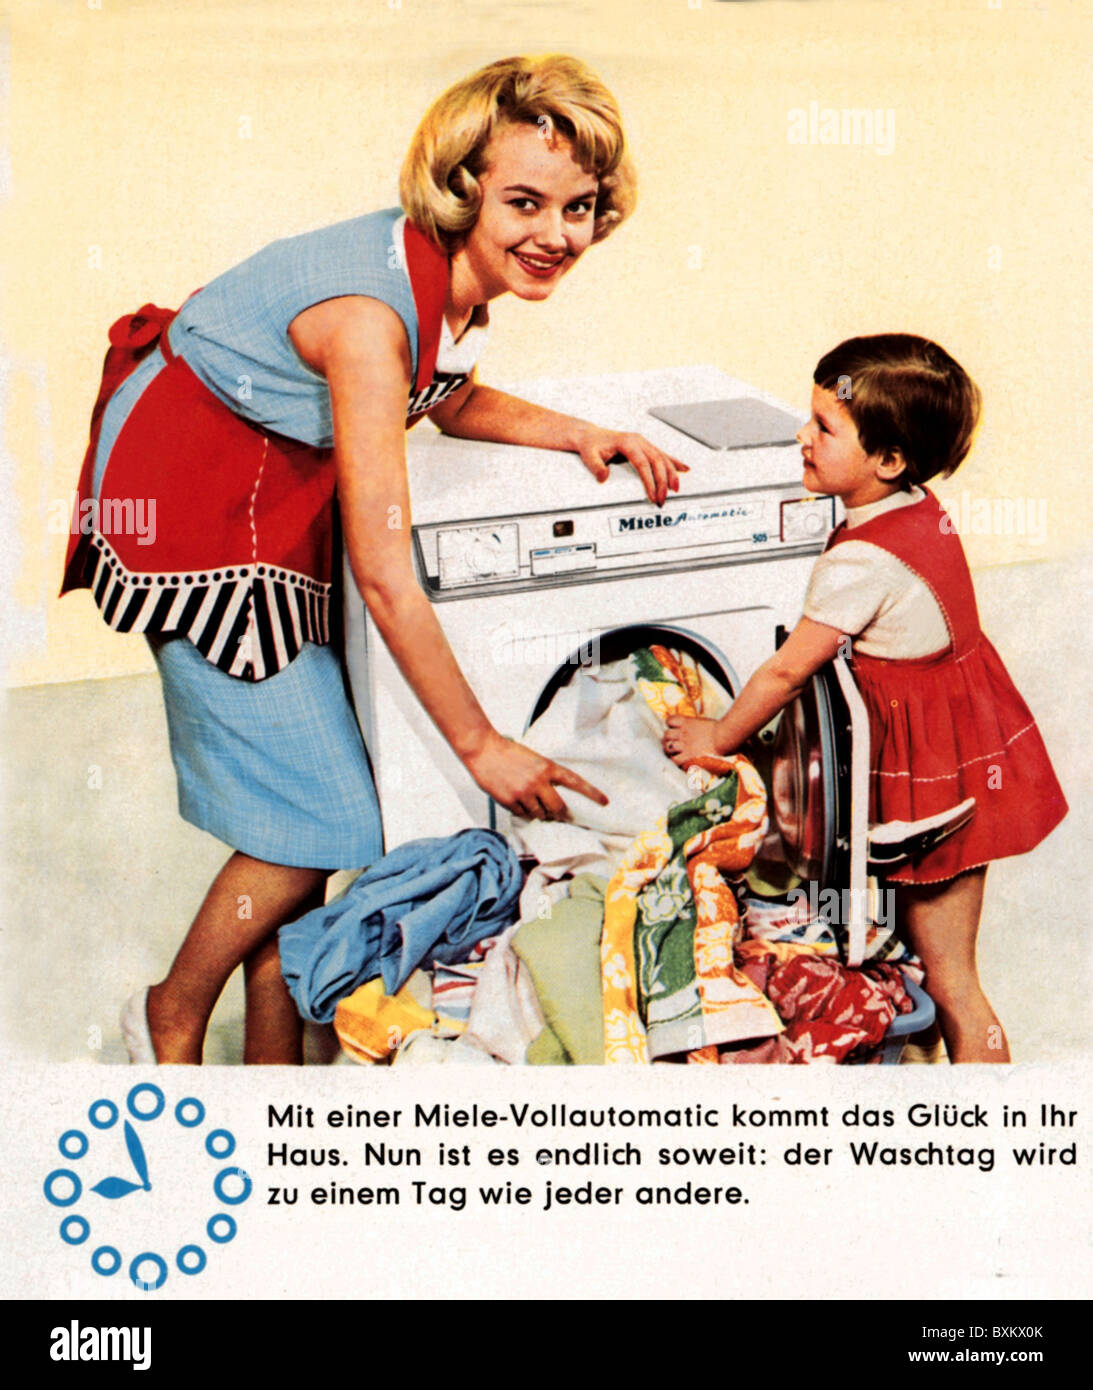 Werbung, Haushalt, Miele Waschmaschine, Mutter und Kind Wäsche waschen, Deutschland, 1958, Zusatz-Rechte-Clearences-nicht vorhanden Stockfoto